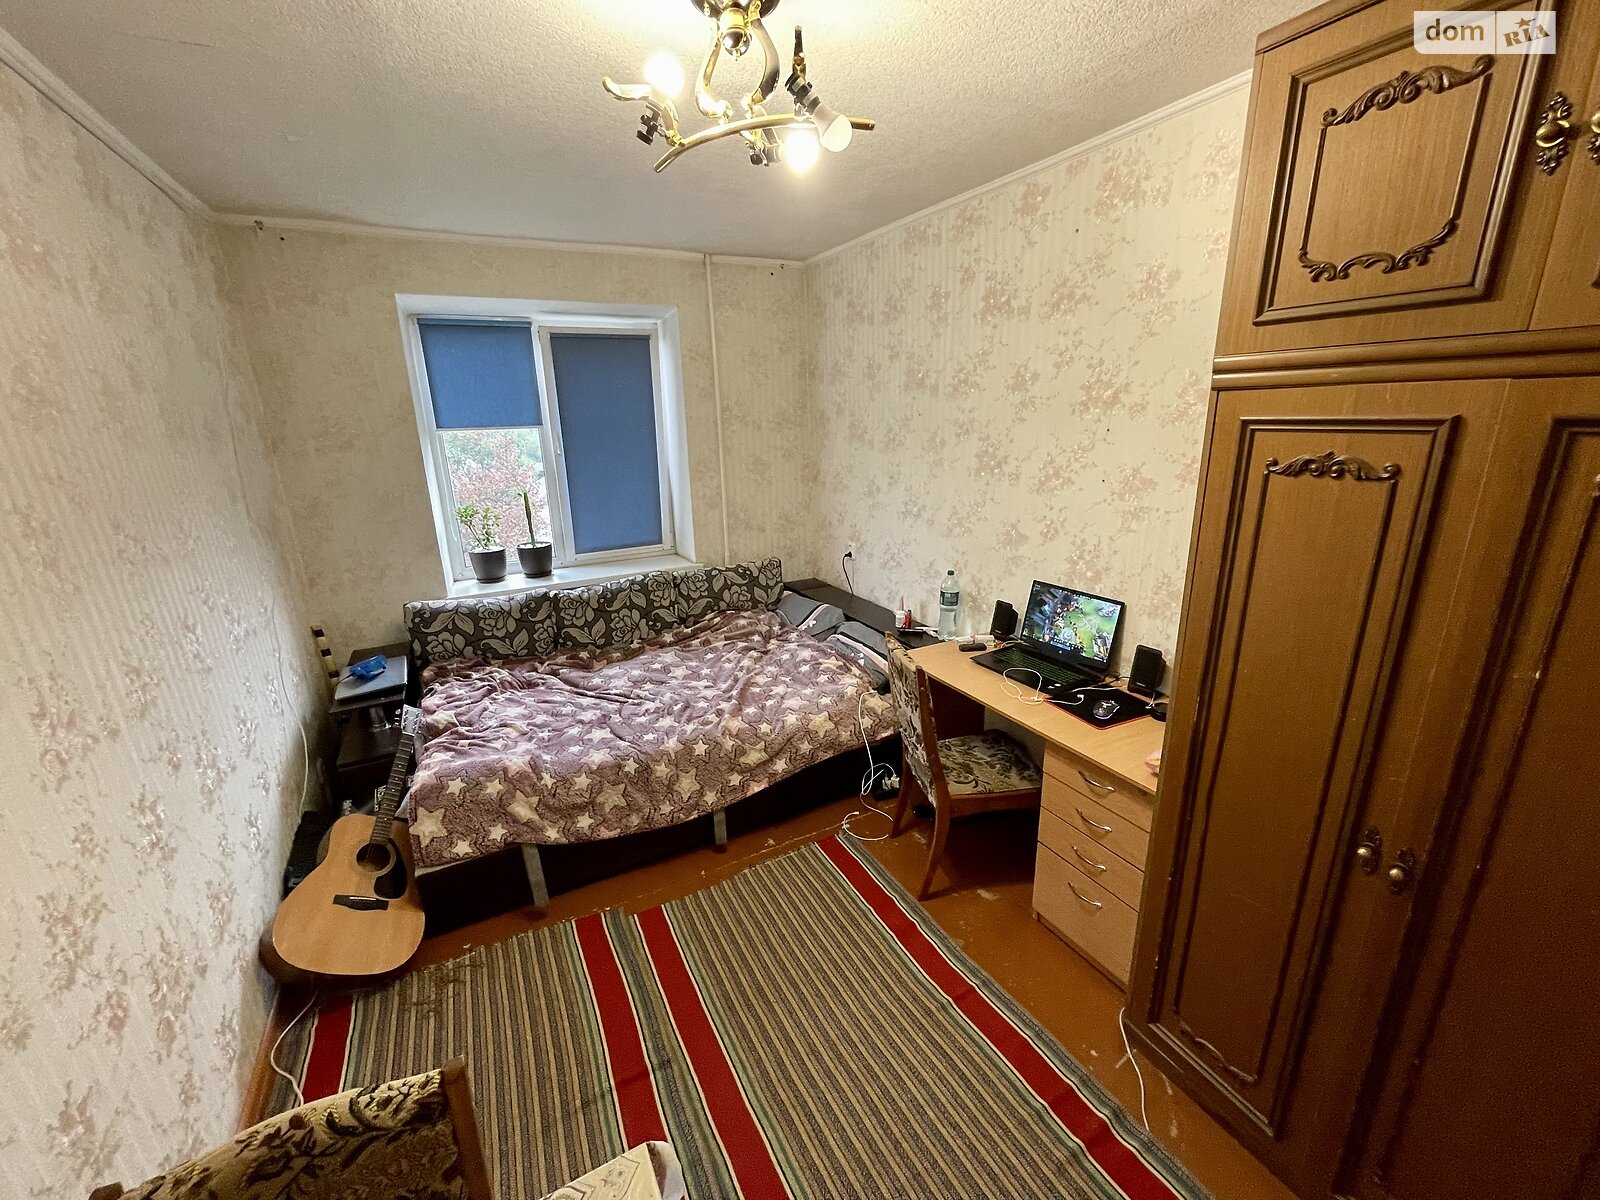 Кімната в Черкасах на вул. Пастерівська 44 в районі Центр на продаж фото 1